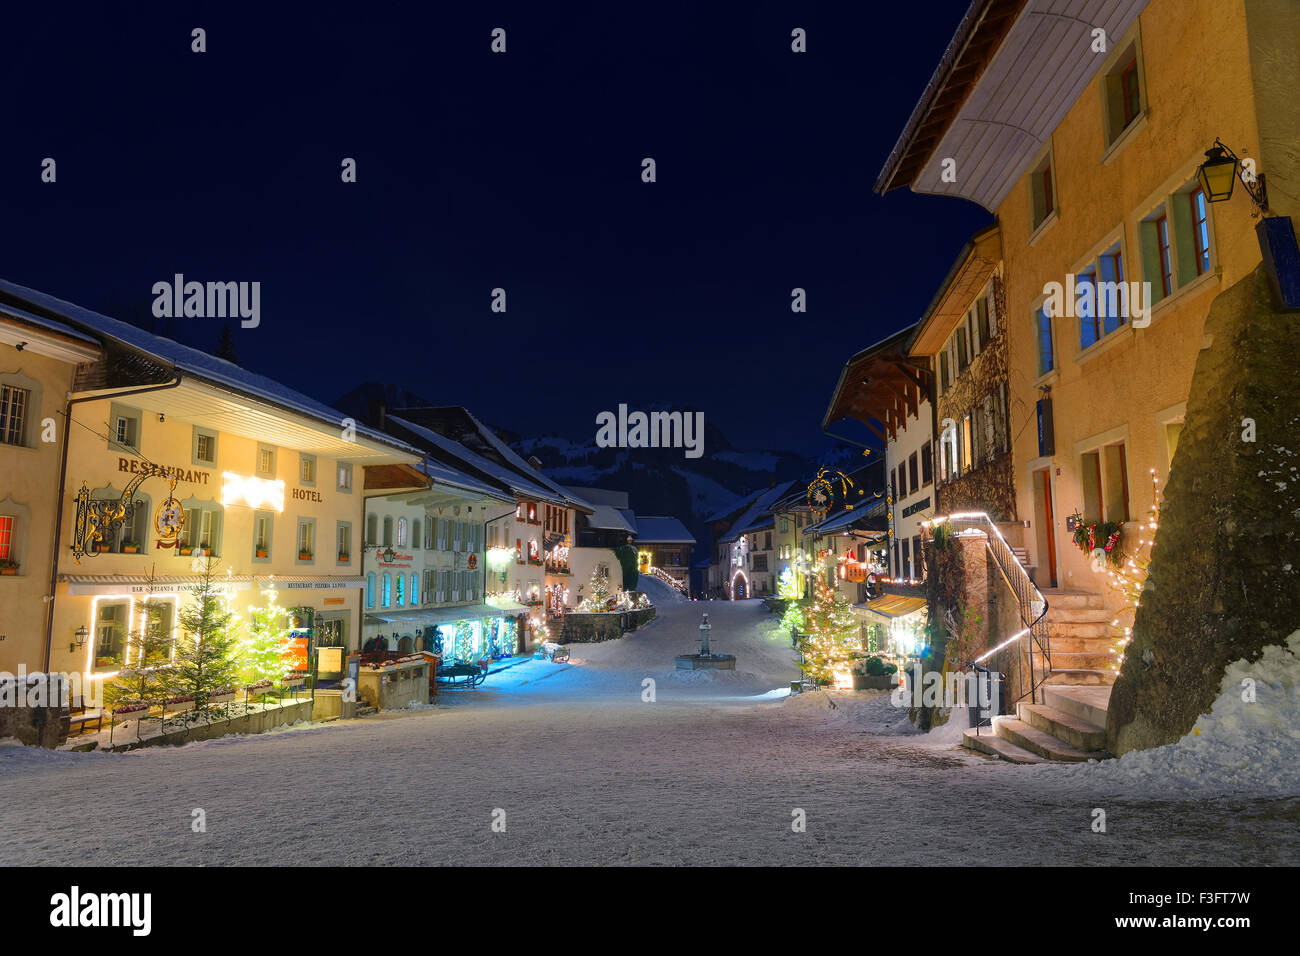 D'hiver pittoresque Vue de nuit de la ville médiévale de Gruyères, Suisse. C'est un lieu touristique important dans la vallée haute de la rivière Saane et donne son nom au célèbre fromage gruyère Banque D'Images